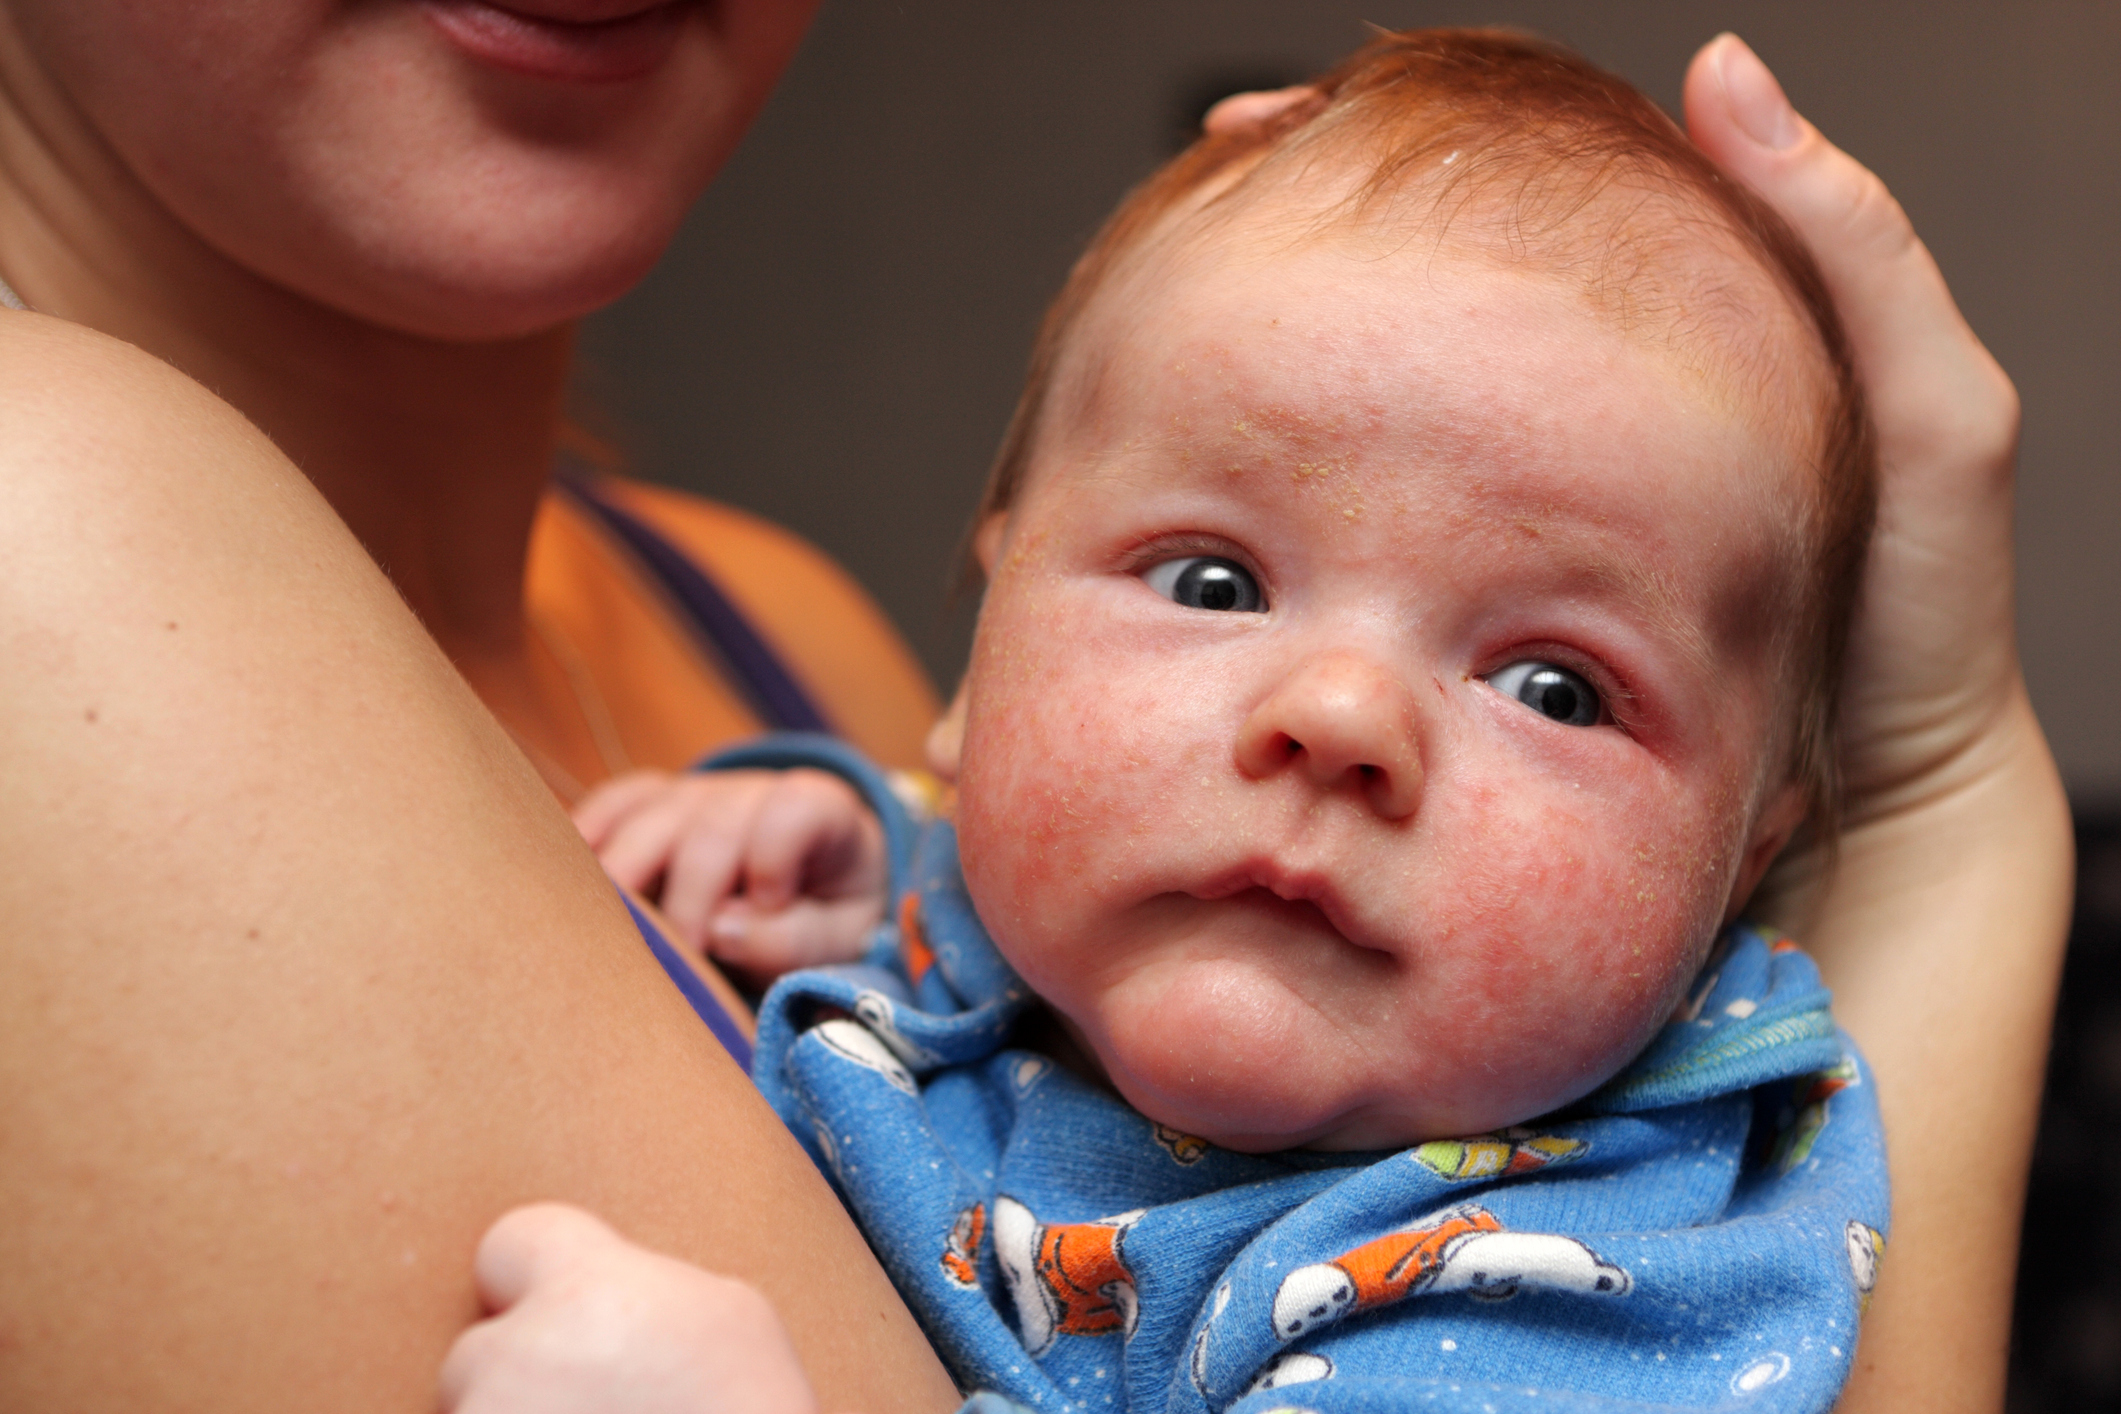 Dermatitida na obličeji malého dítěte